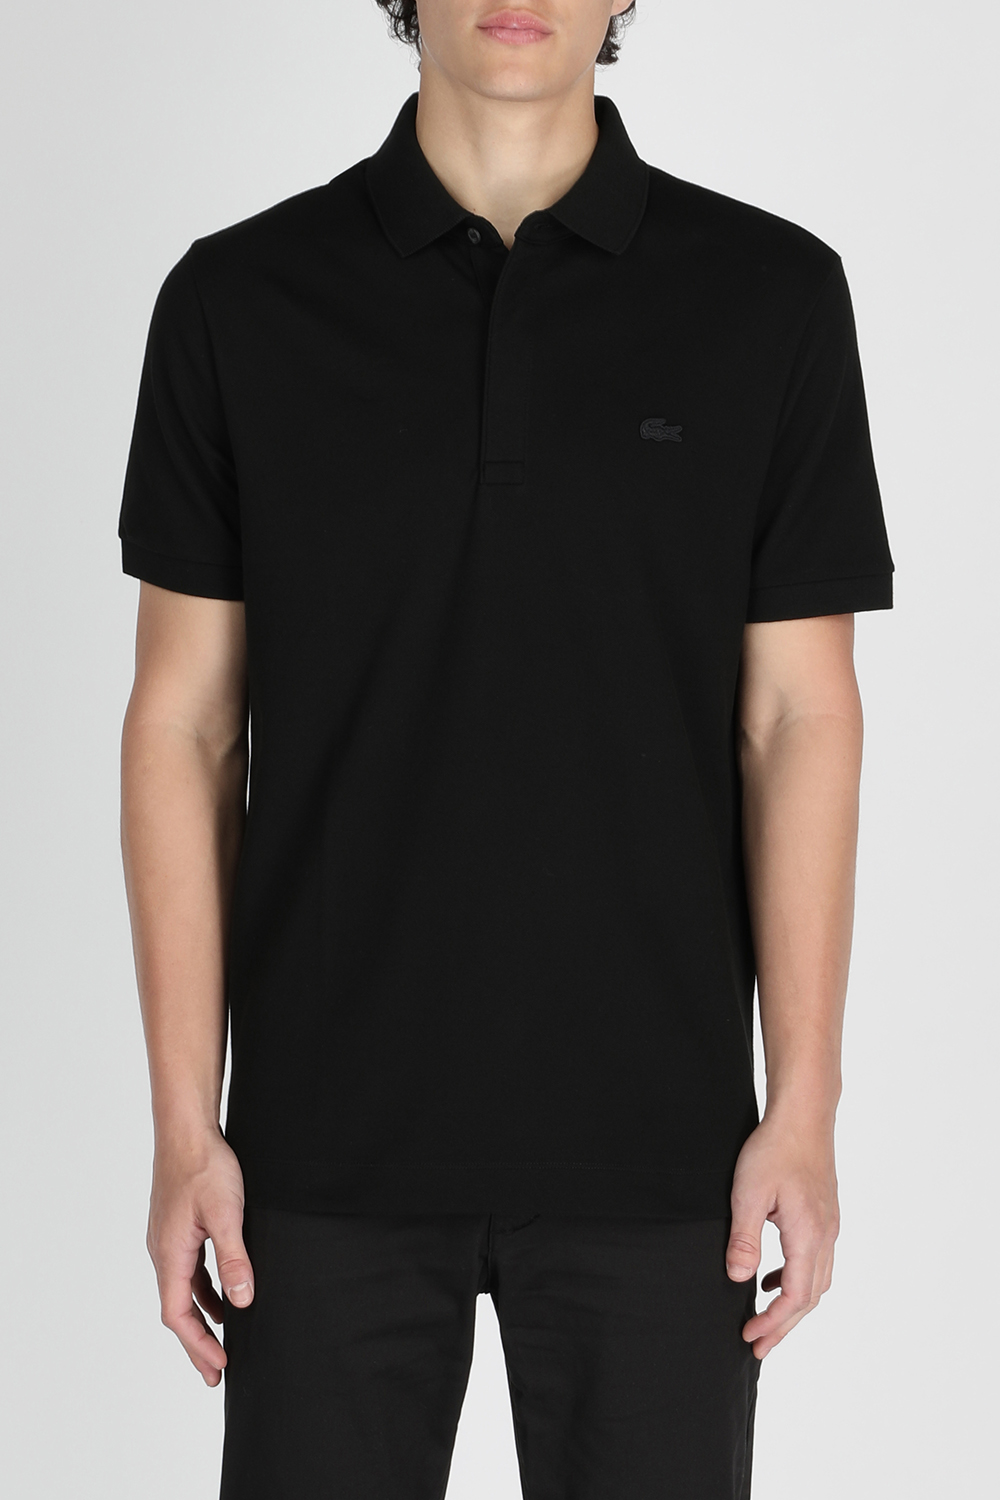 חולצת פולו שחורה בגזרת סלים עם לוגו LACOSTE